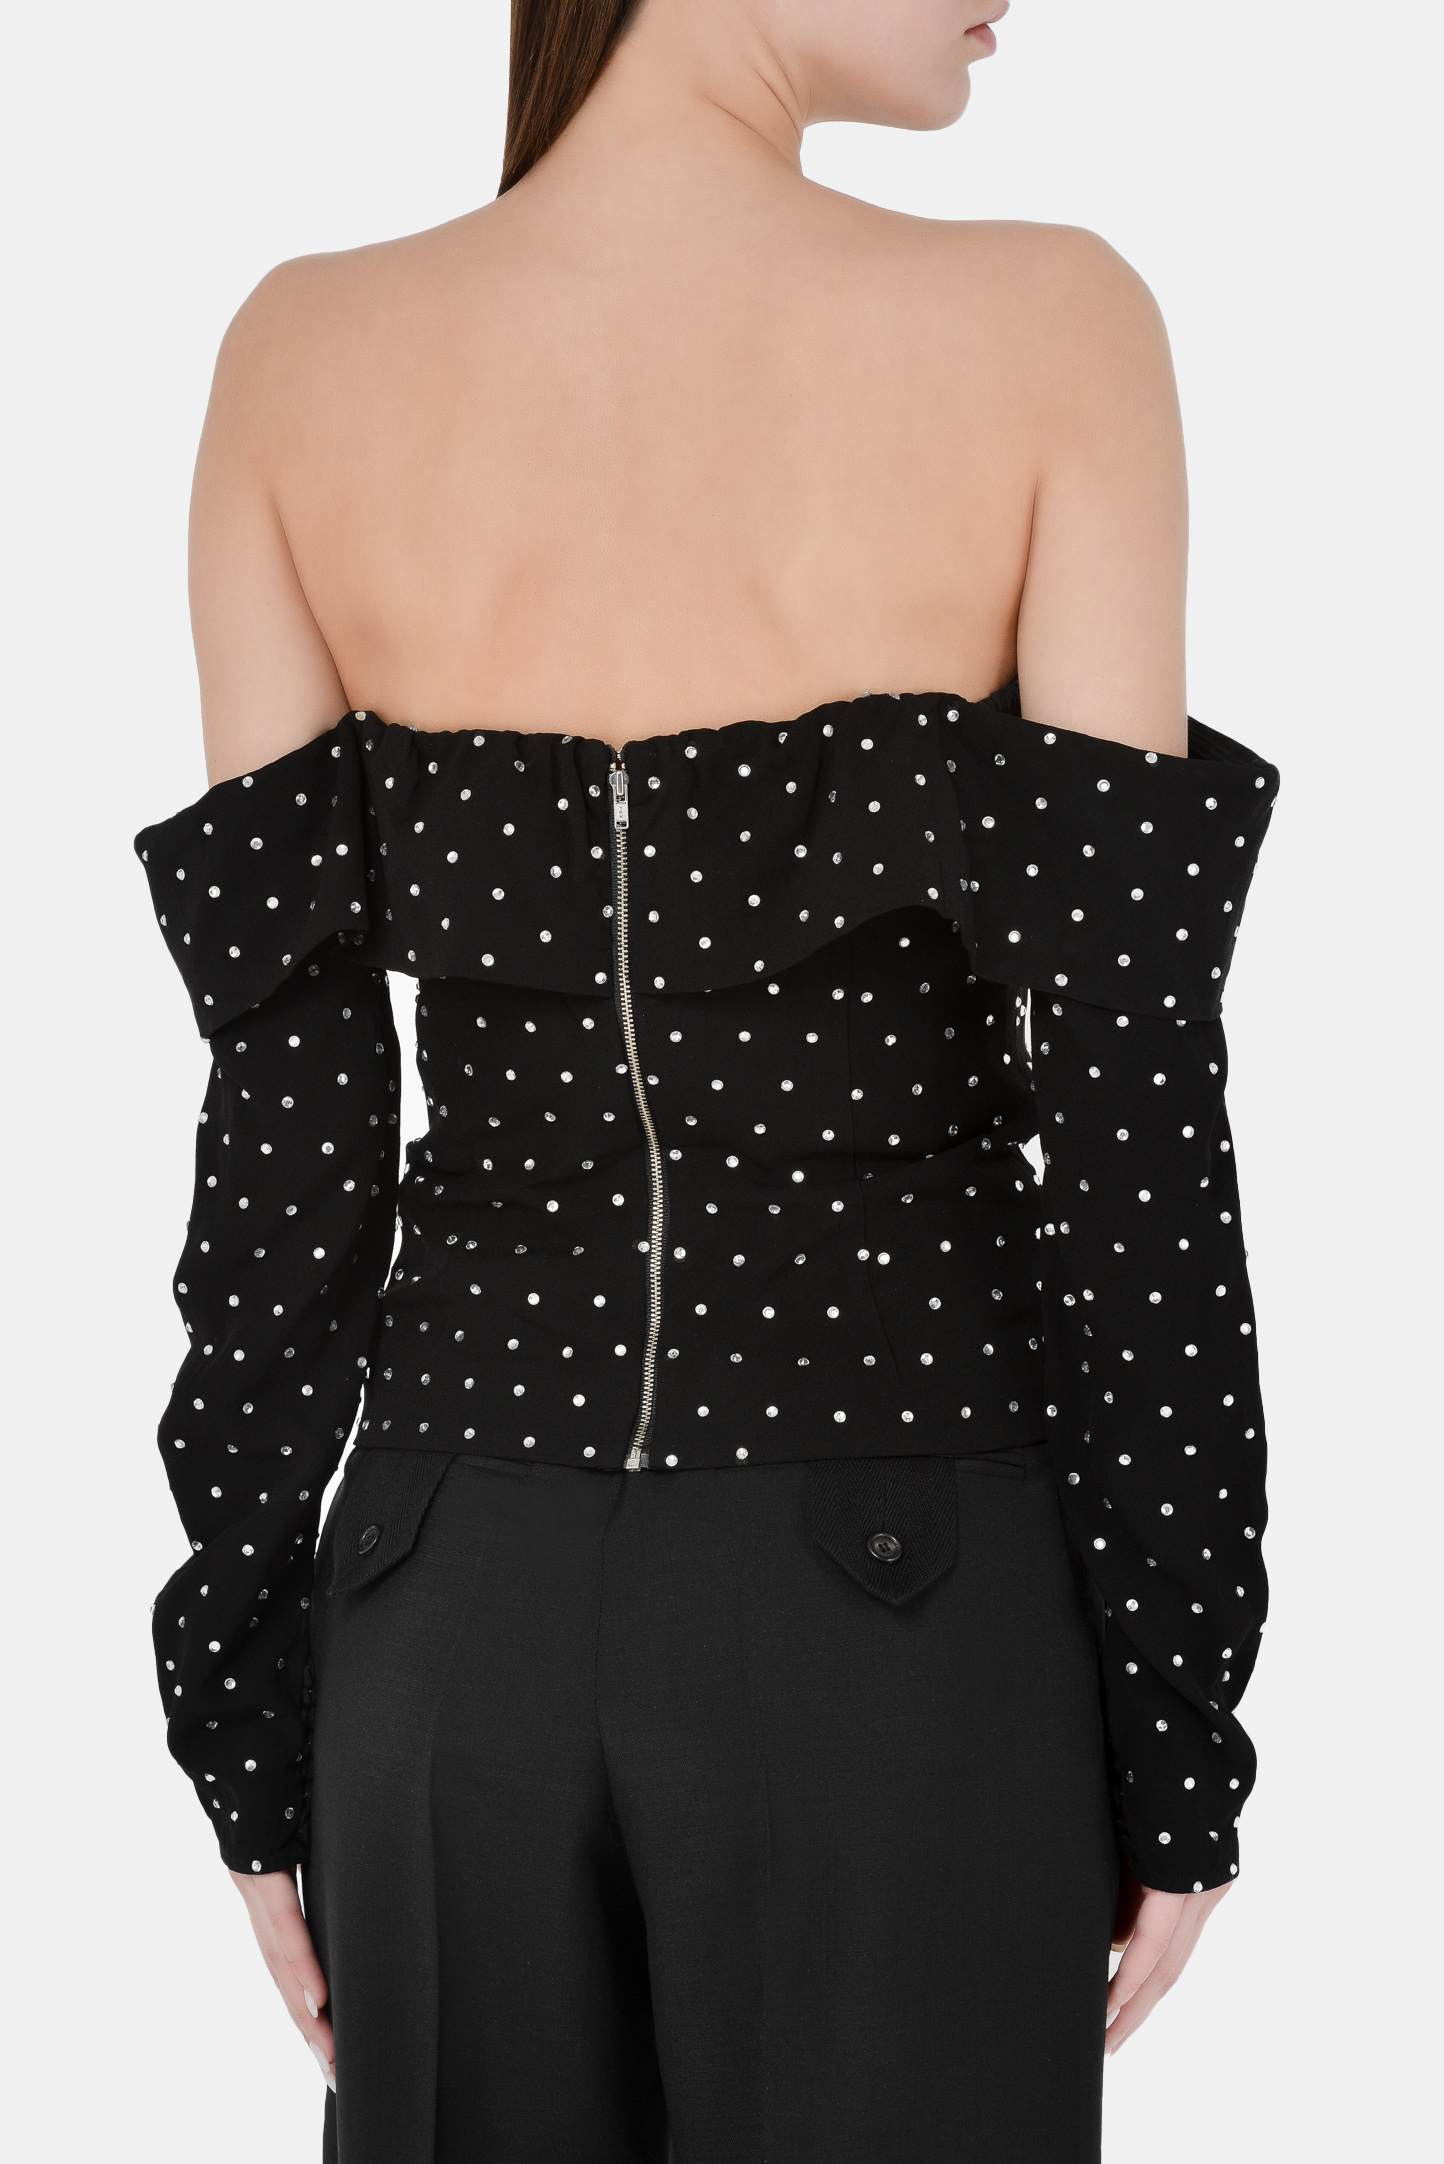 Блуза SELF PORTRAIT RS21-096T, цвет: Черный, Женский